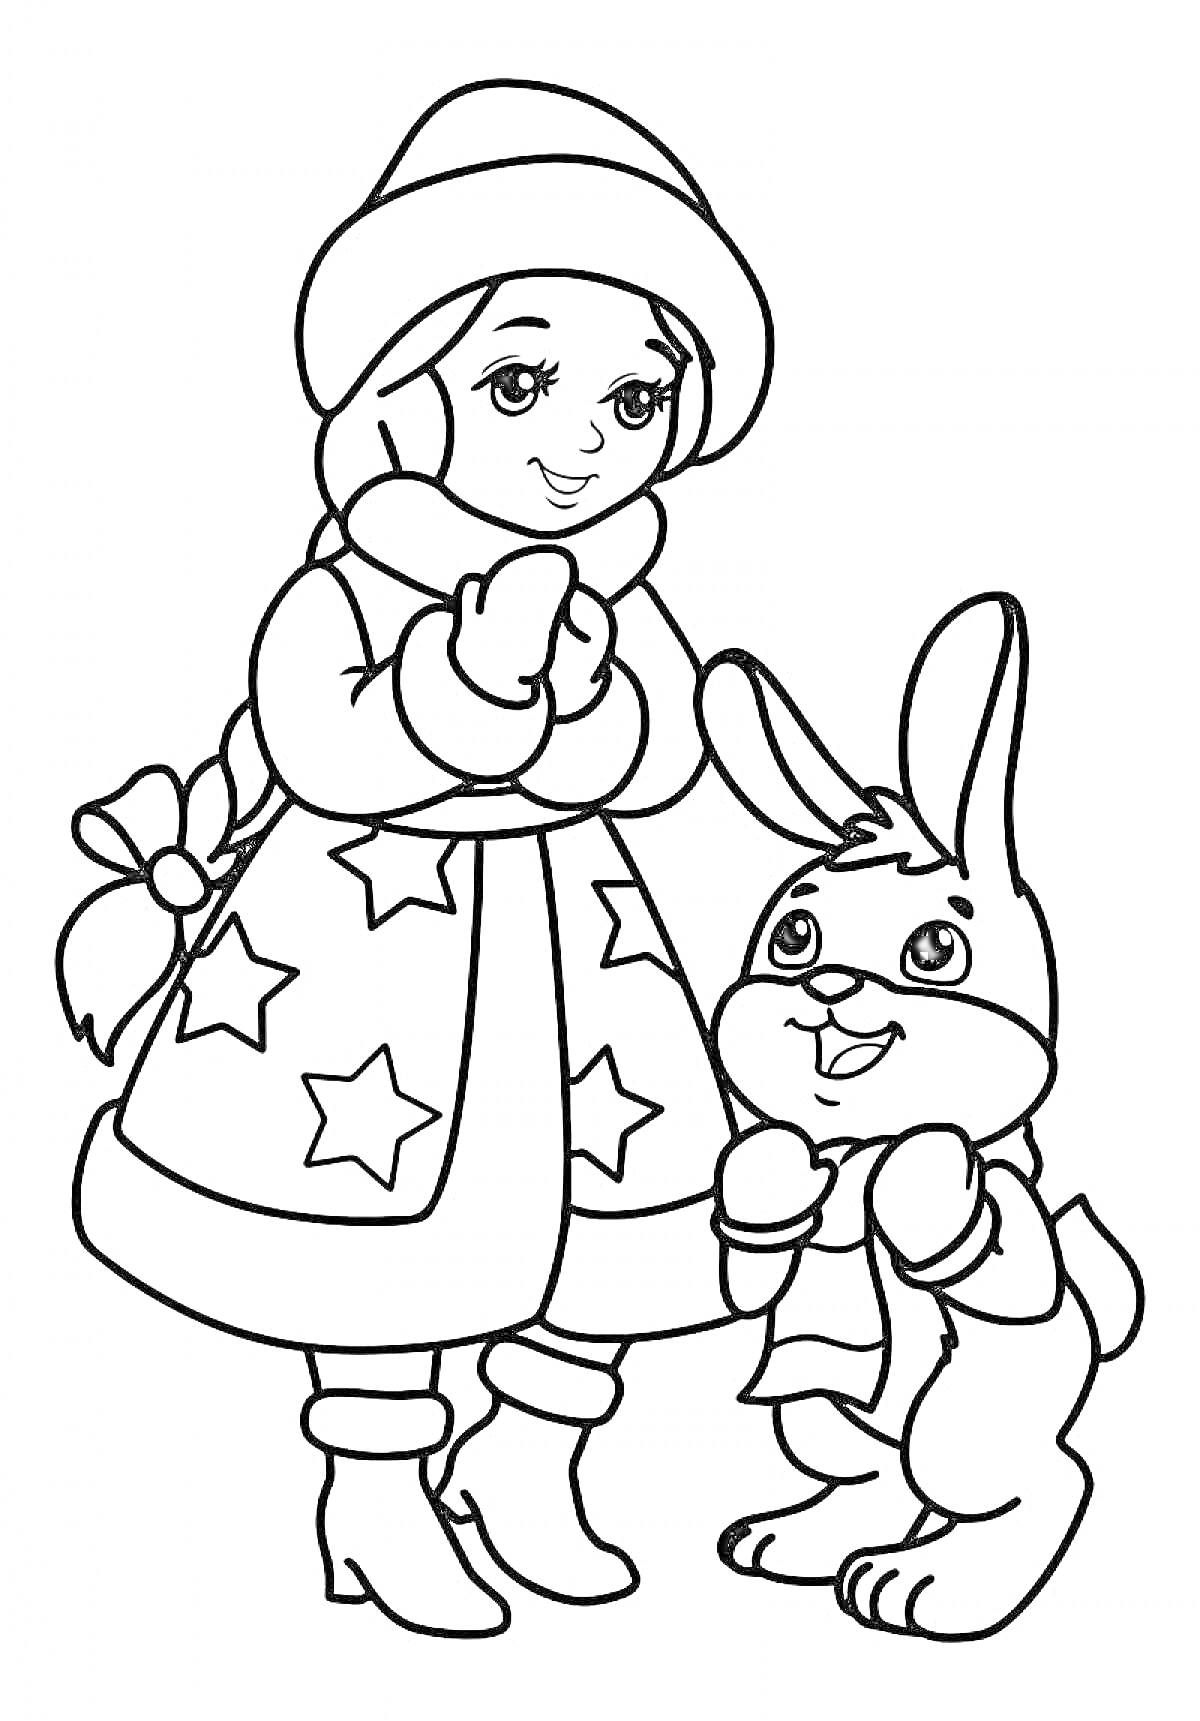 Раскраска Девочка в зимней одежде и заяц в шарфике